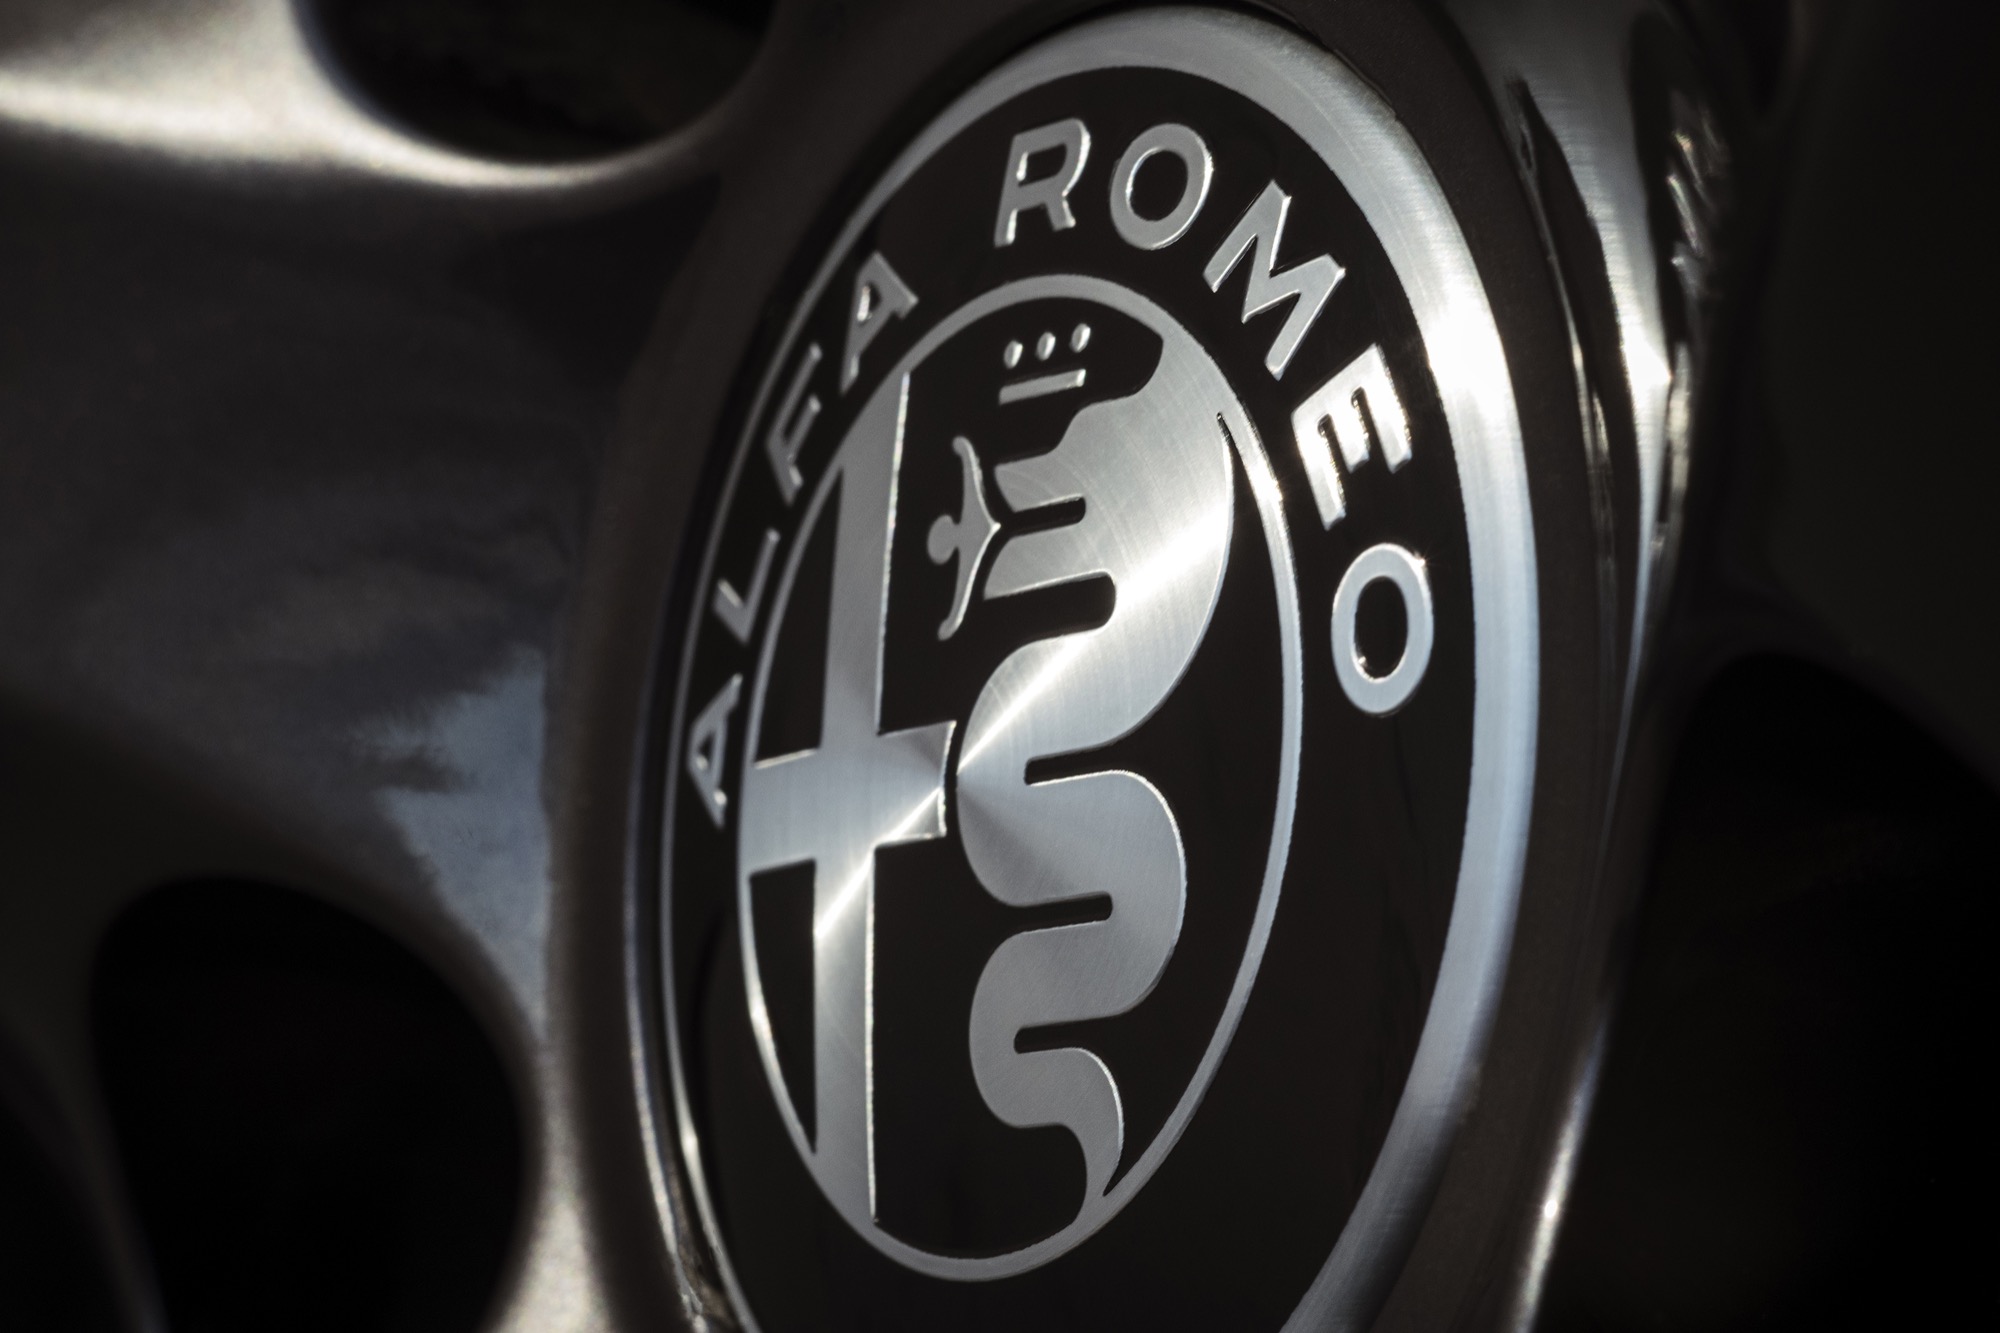 Alfa Romeo’s Nero Edizione package for 2.0L Giulia and Stelvio models